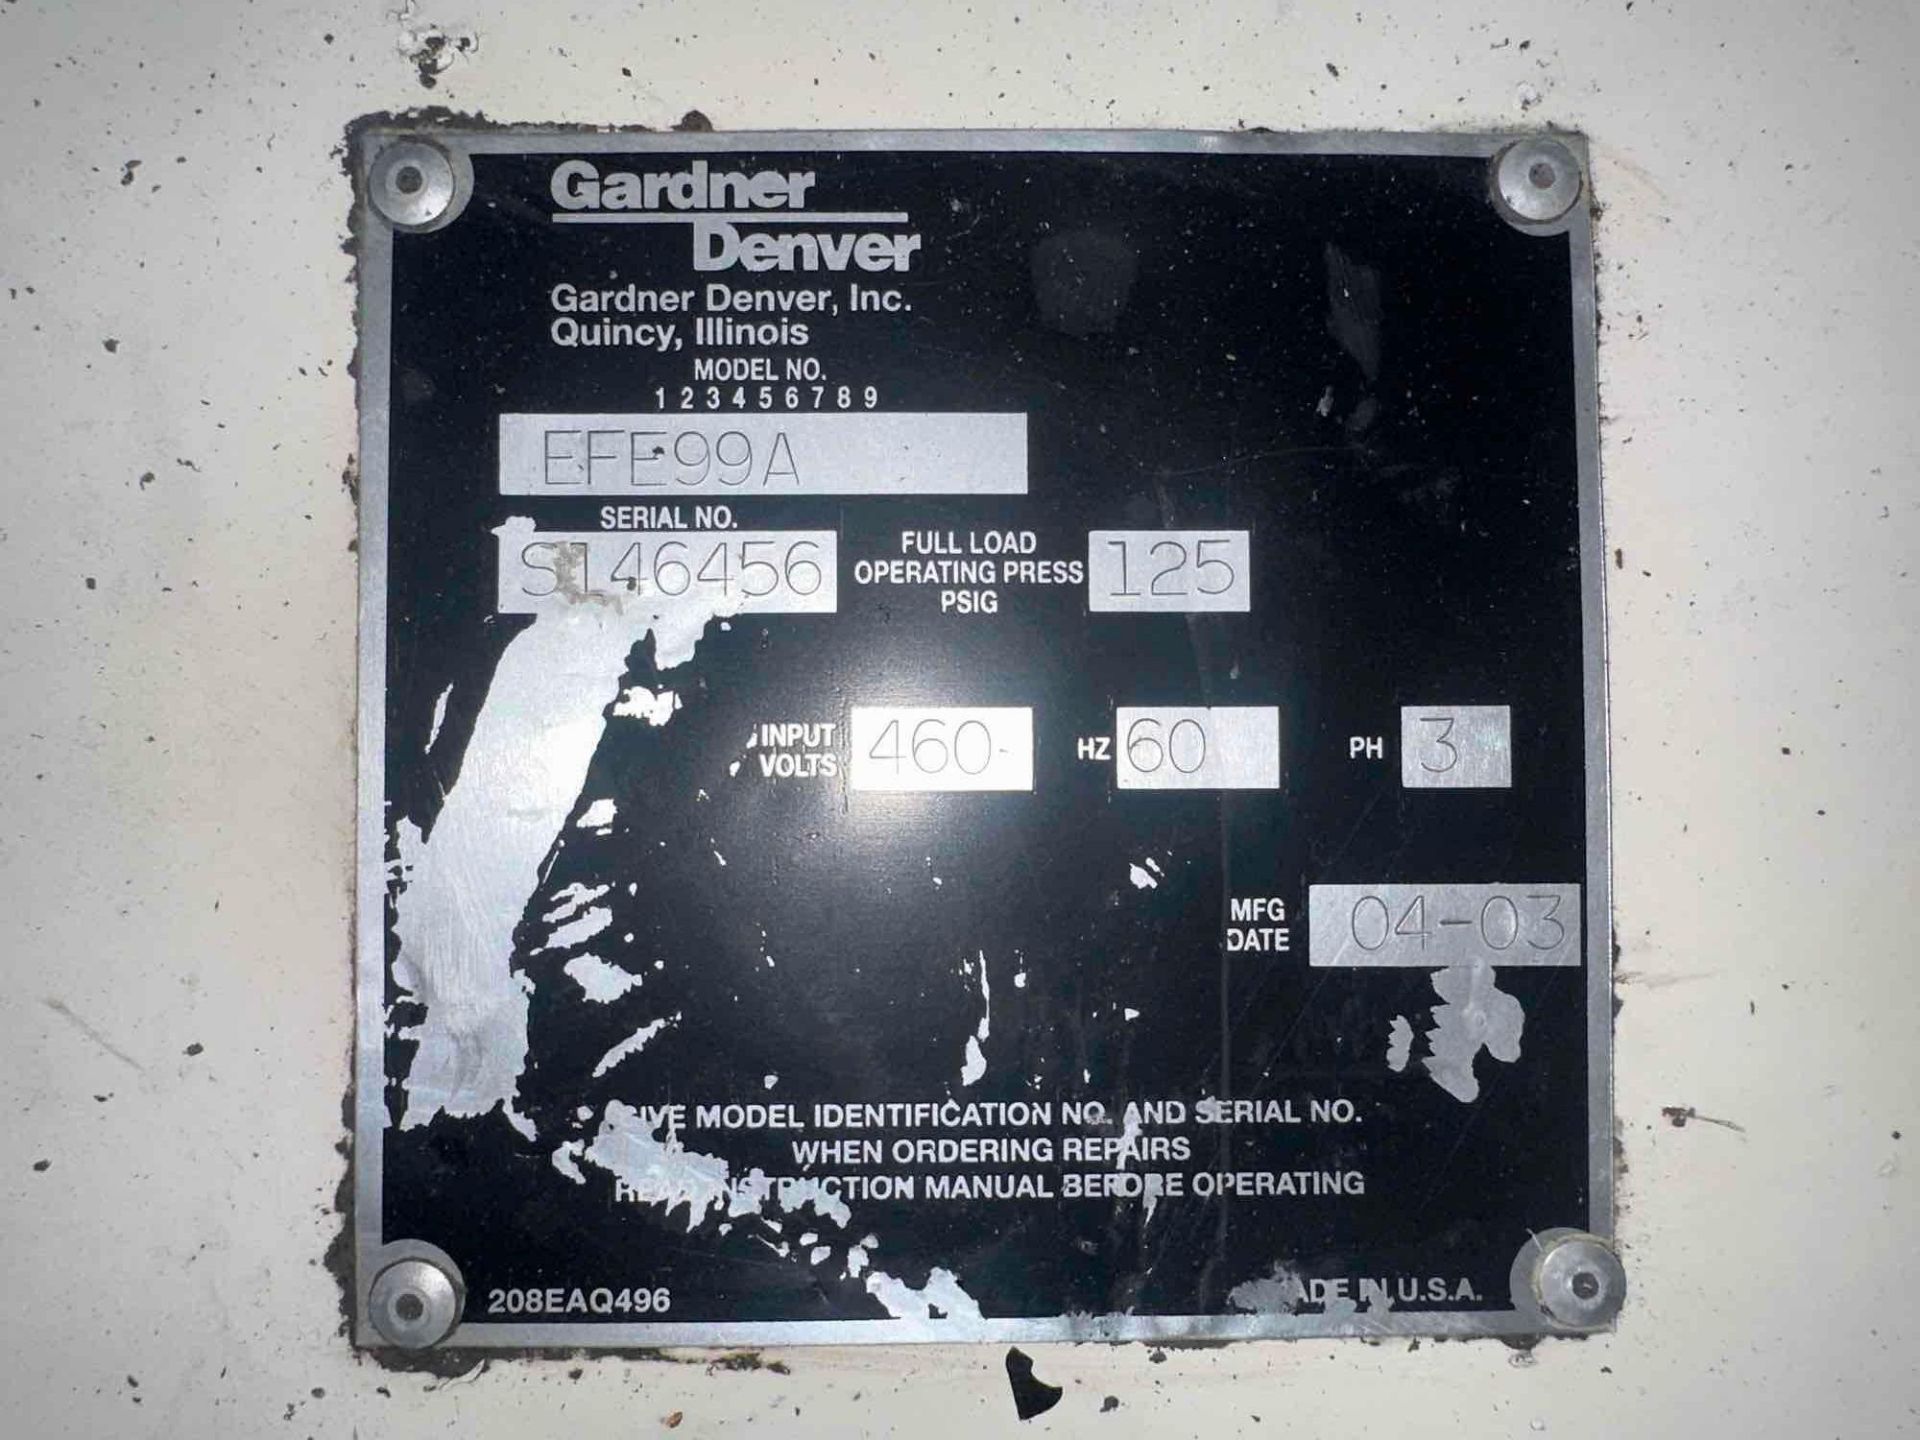 Gardner Denver EFE99A Compressor, 75hp, 125psi, Dimensions:  23"L x 43"W x 79"H, s/n S146456, 2003 - Image 5 of 5